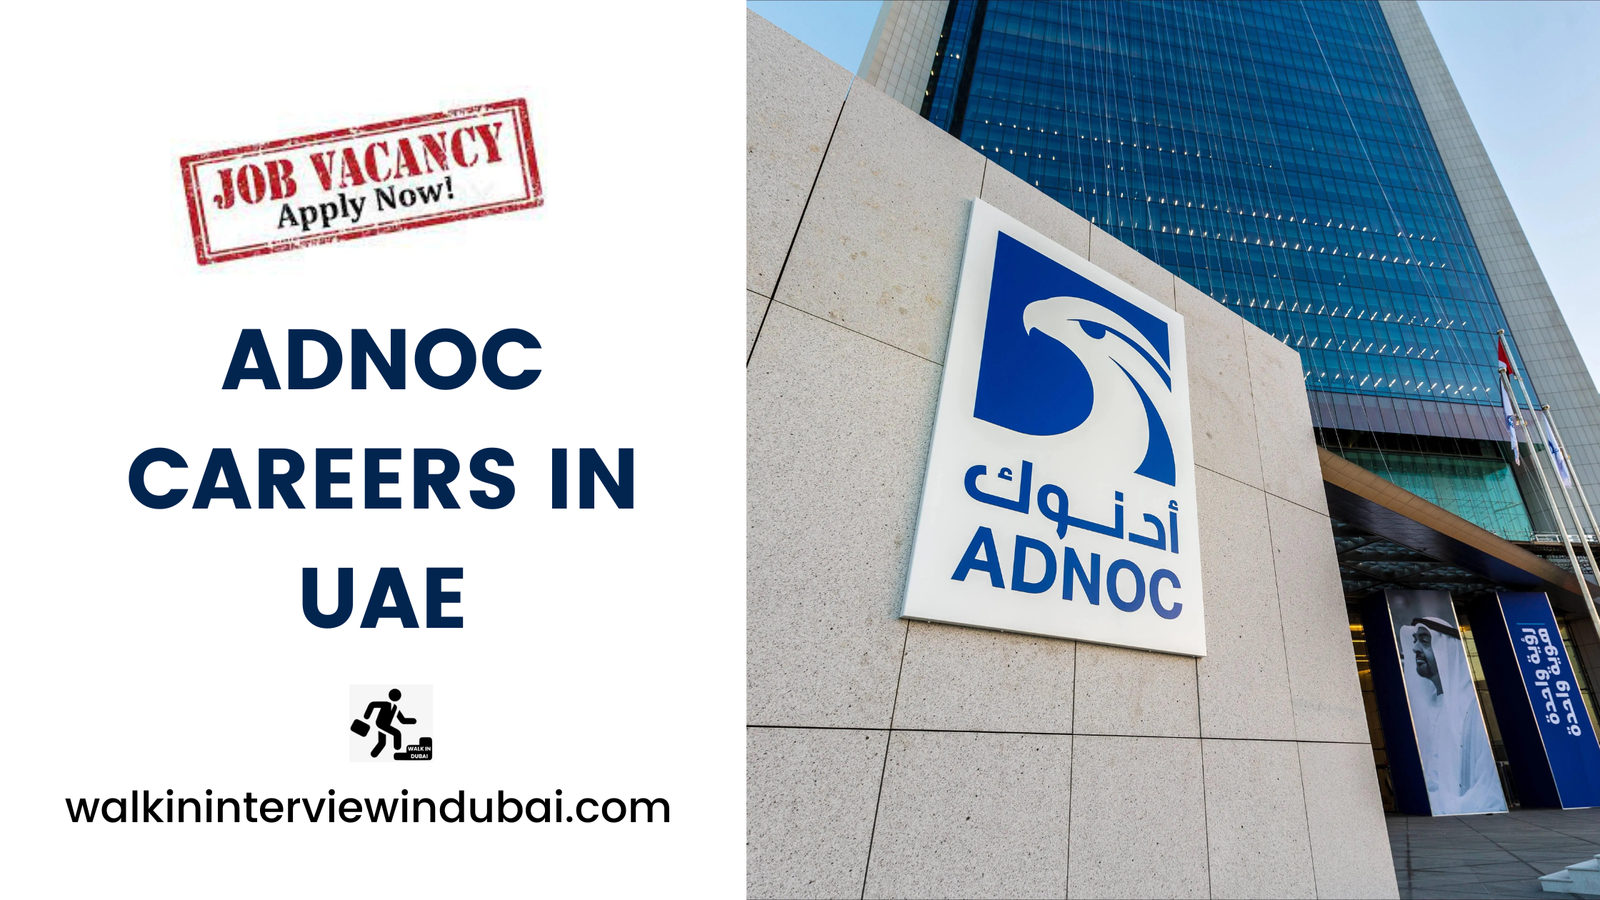 Adnoc Careers in UAE